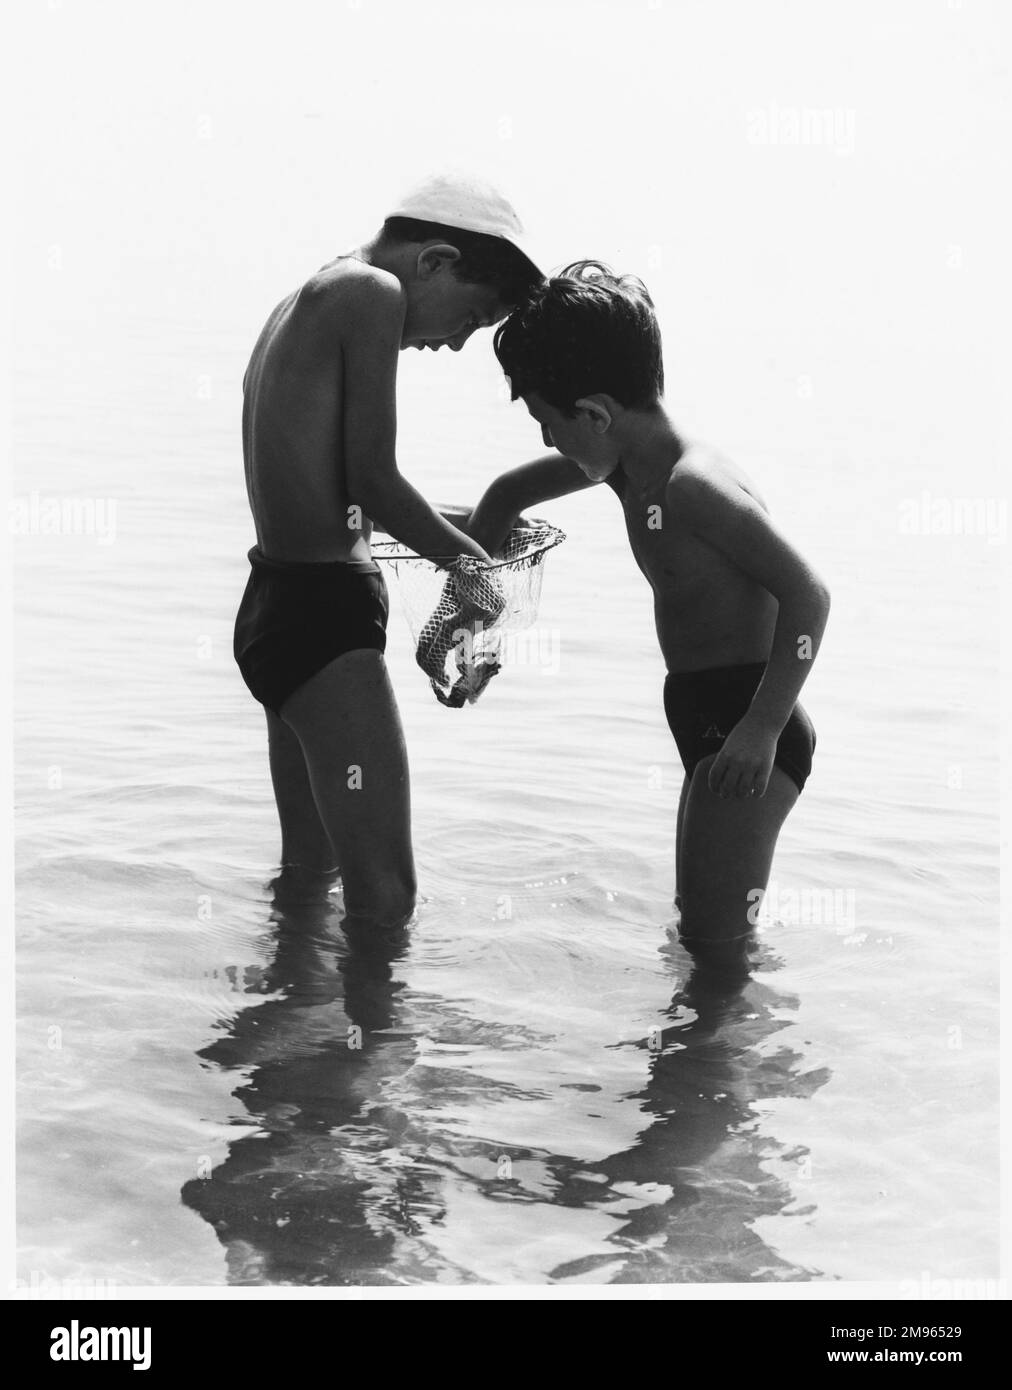 Dos niños se paran en el mar con una red con la que han atrapado un cangrejo. Es mejor que mire sus dedos poniéndolos allí. Foto de stock